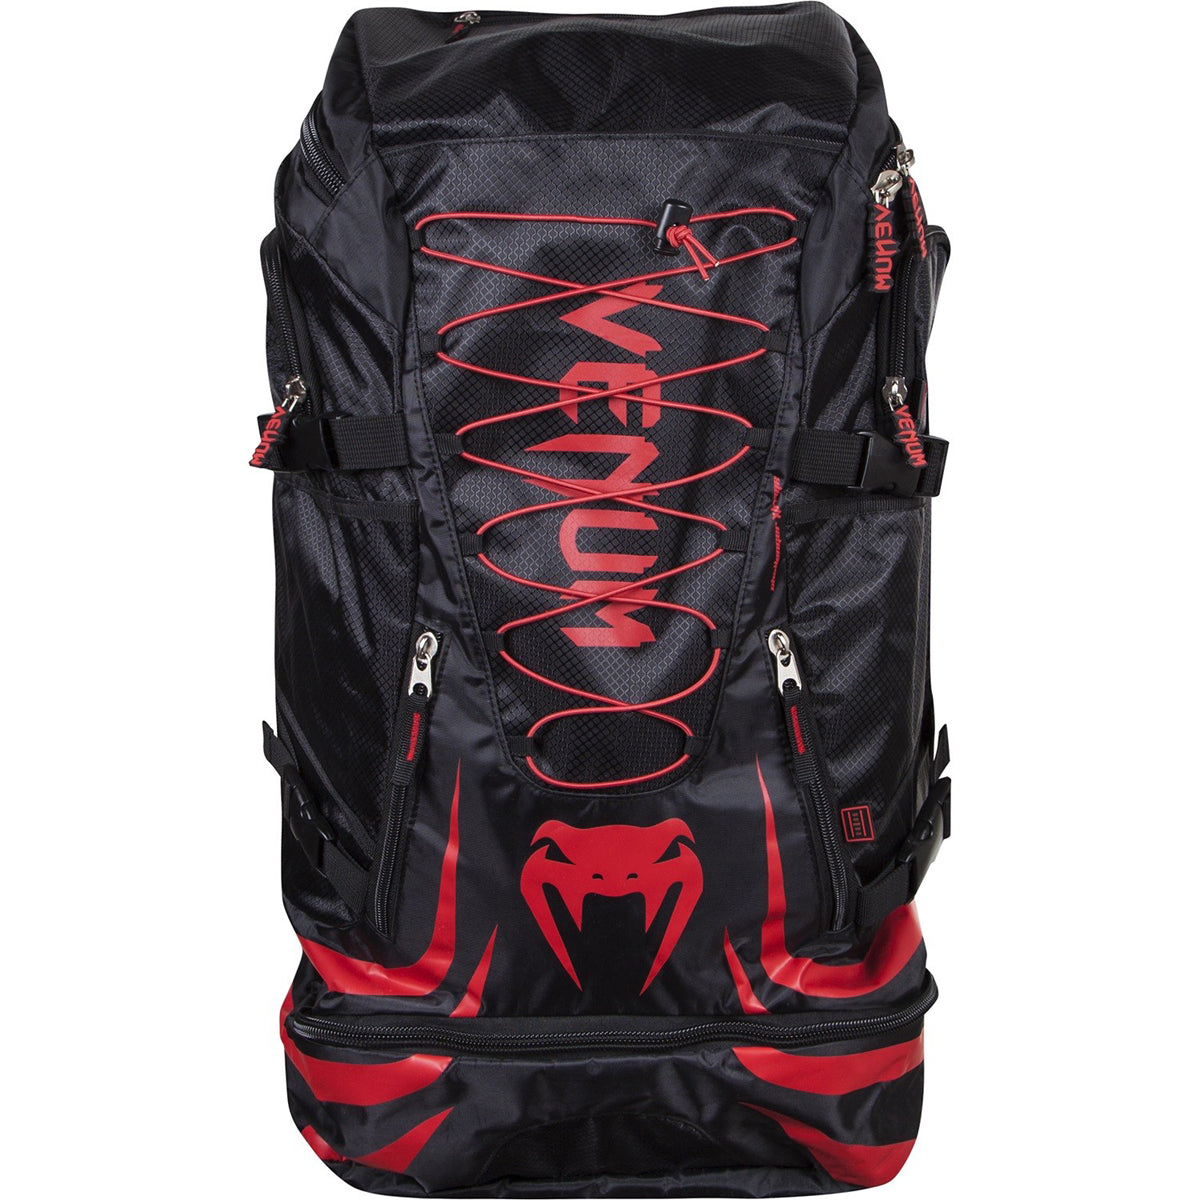 Venum Challenger Xtrem Backpack - Black/Red Venum